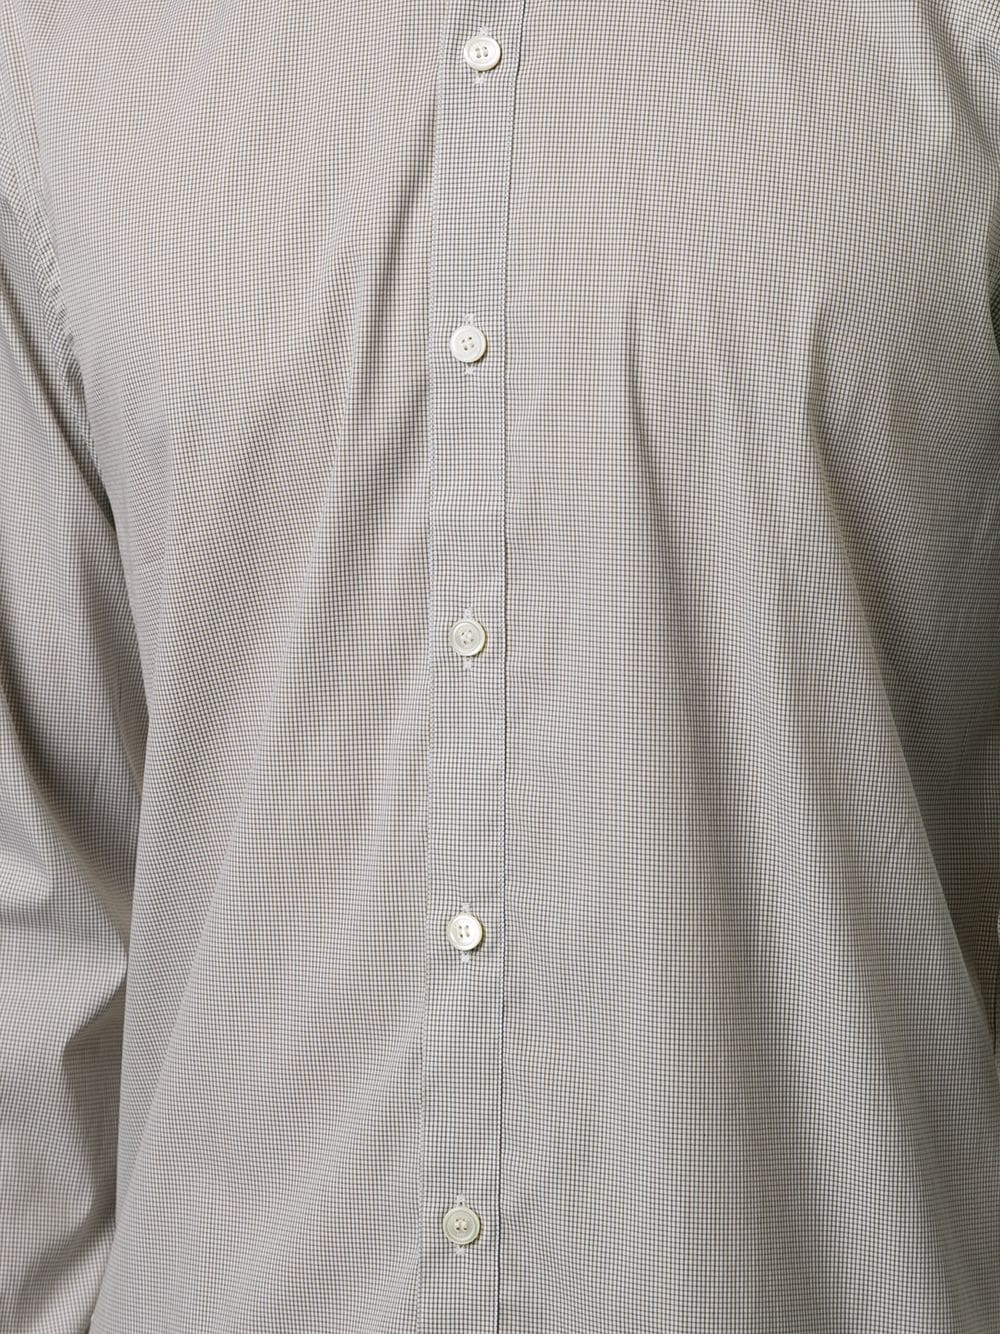 фото Cerruti 1881 рубашка с длинными рукавами